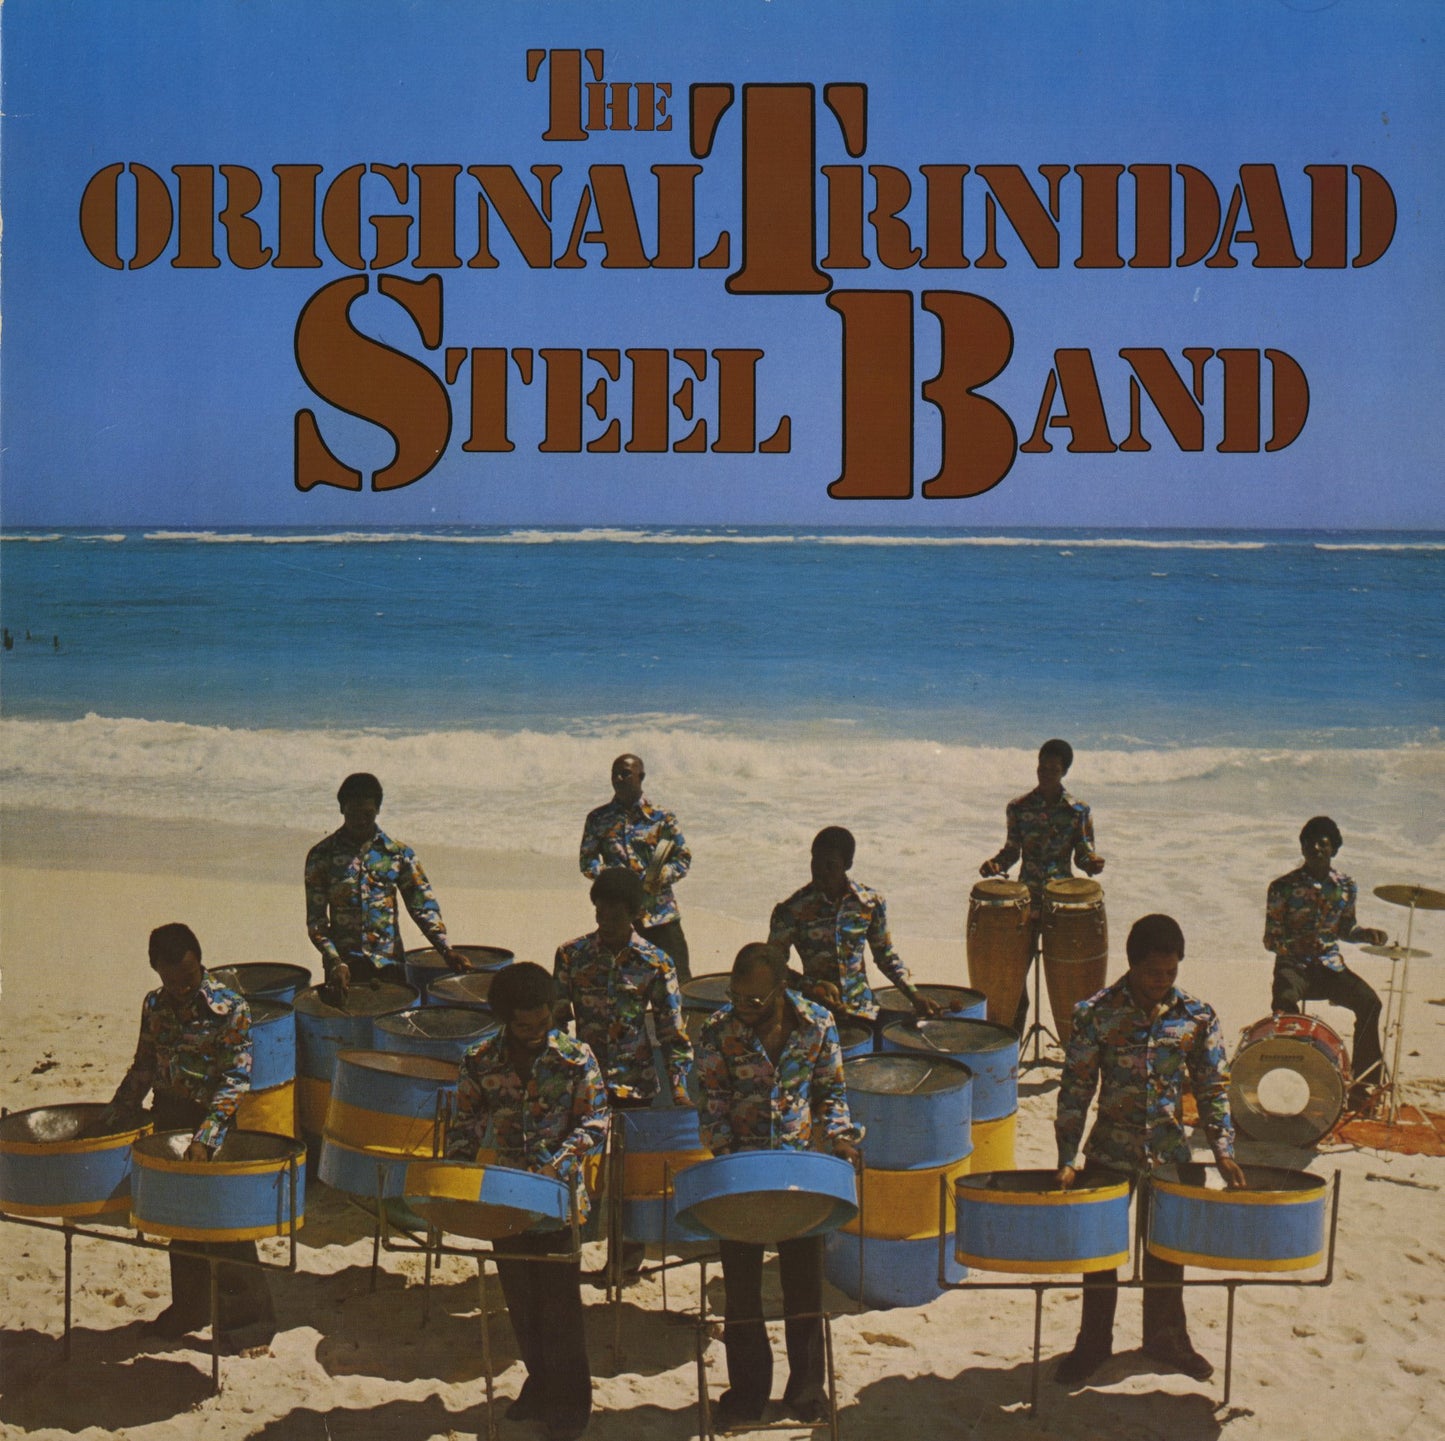 The Original Trinidad Steel Band / The Original Trinidad Steel Band (2430 059)